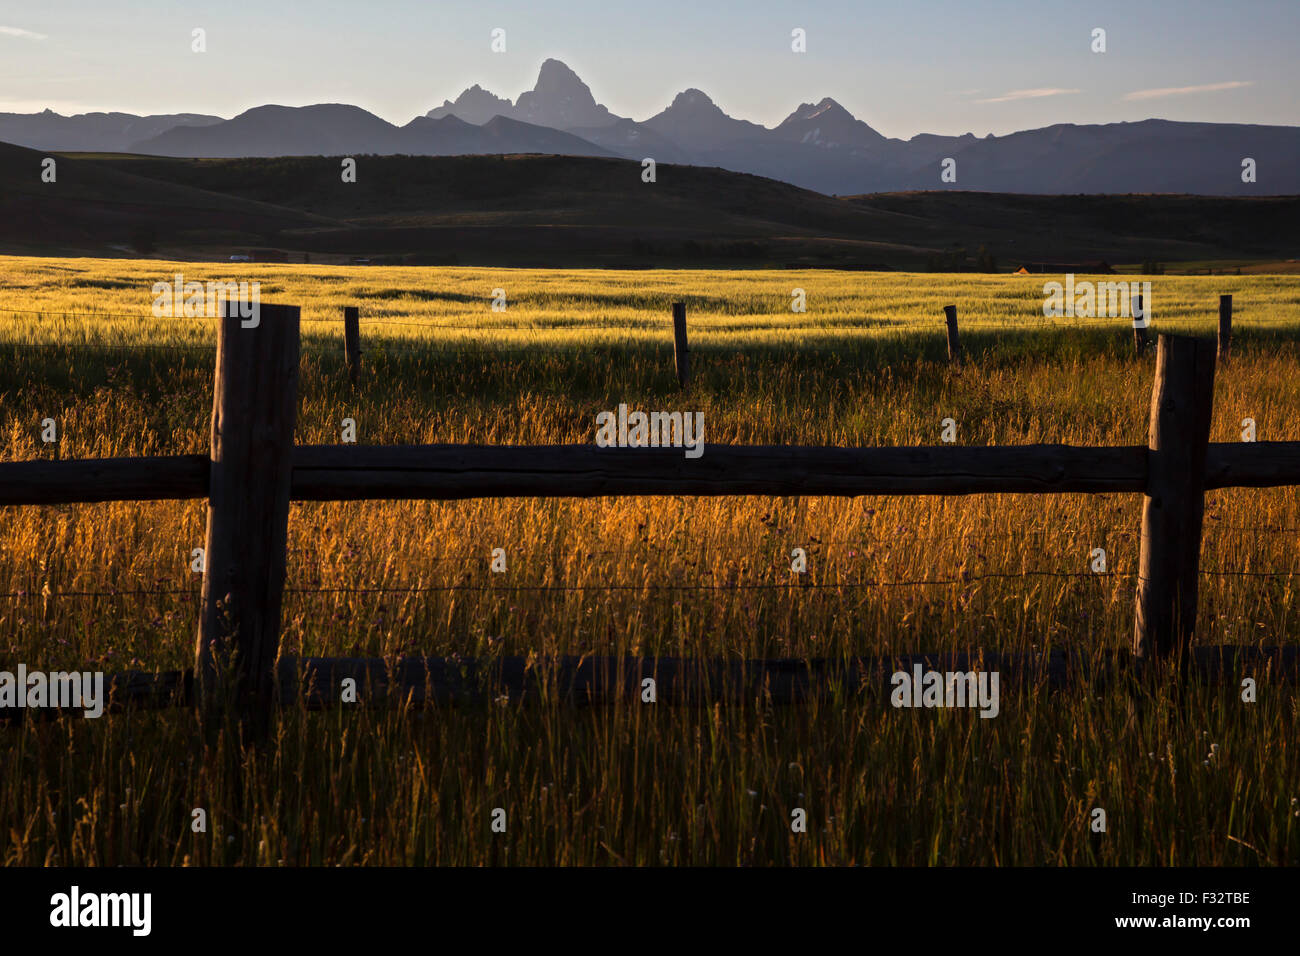 Felt, Idaho - The Teton mountain range, from farm land in eastern Idaho. Stock Photo